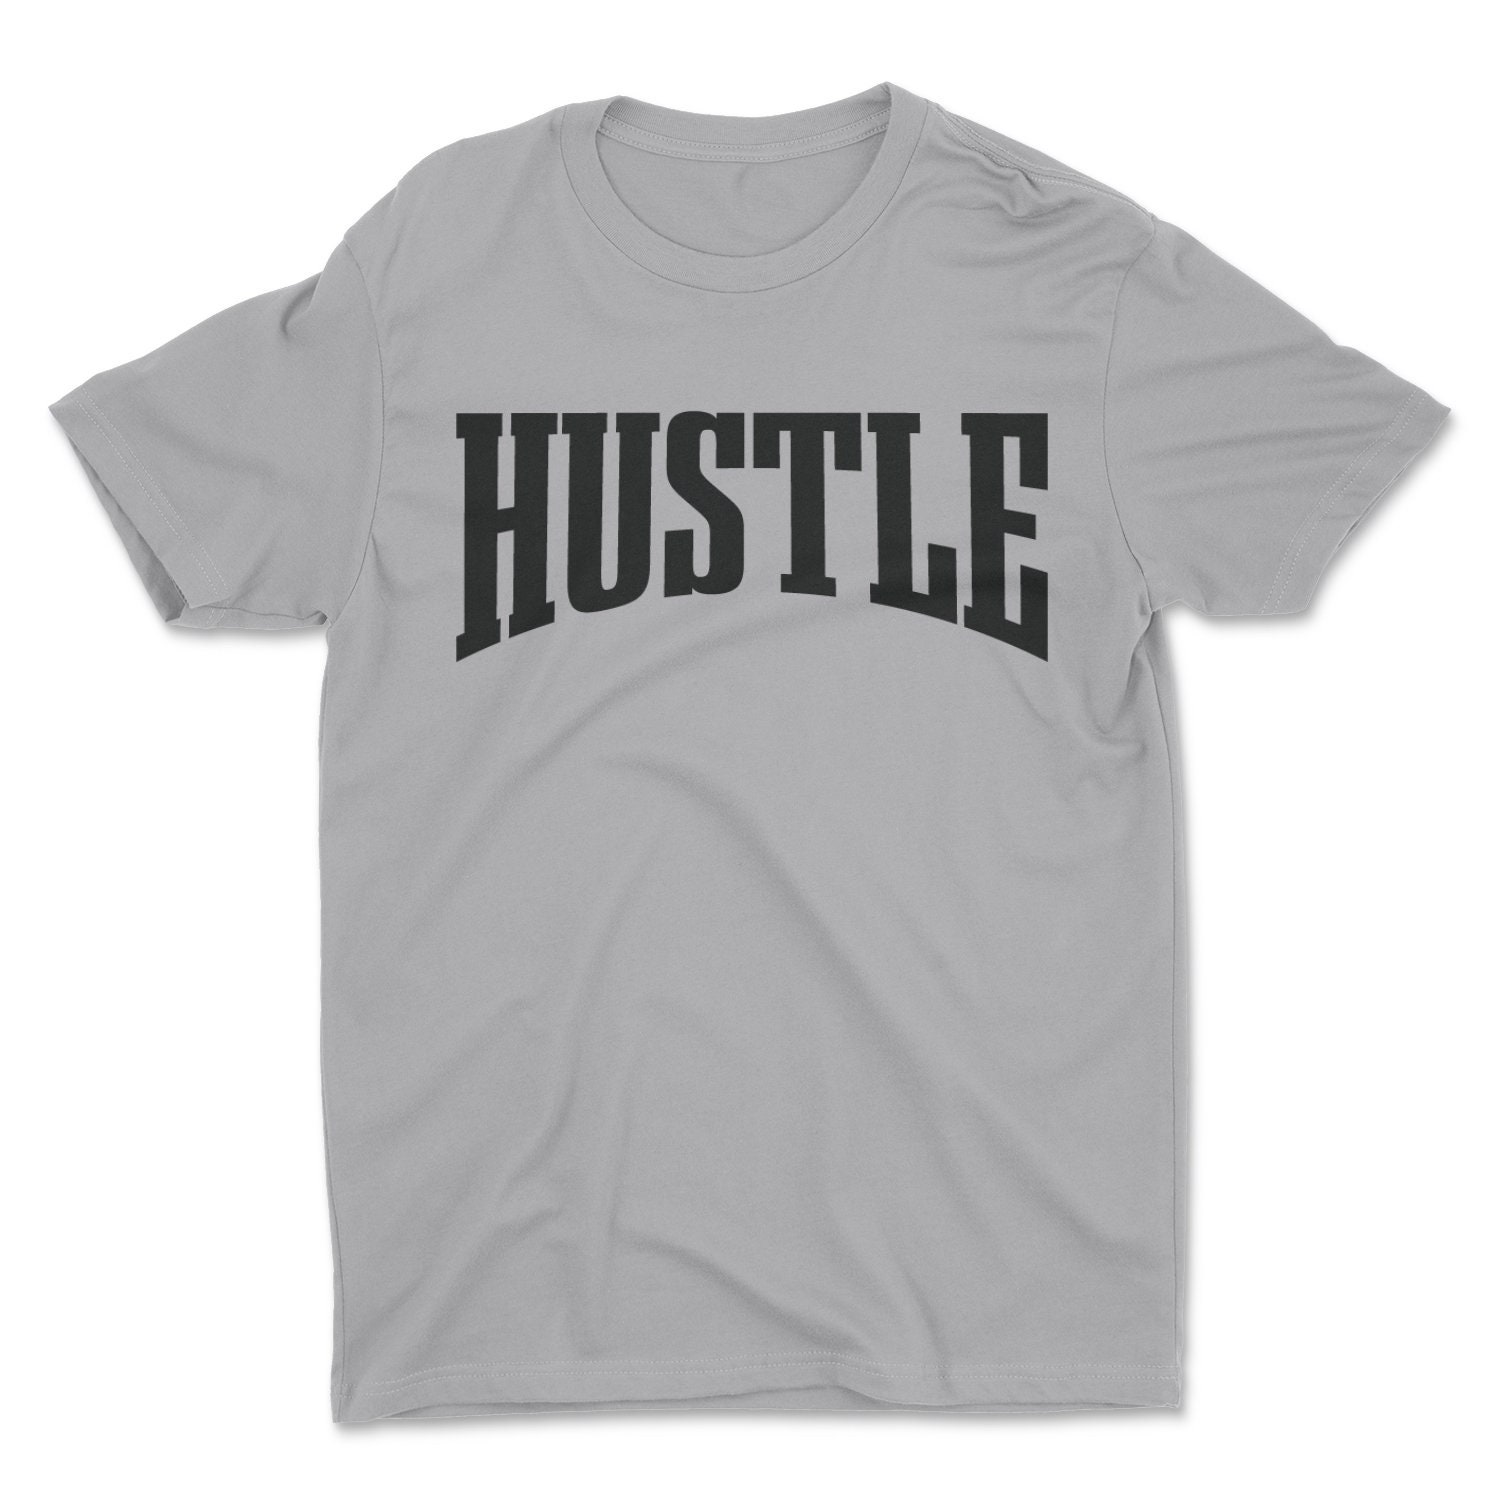 Hustle tee Graphic Tee T-shirt Unisex Tshirt Screen | Etsy